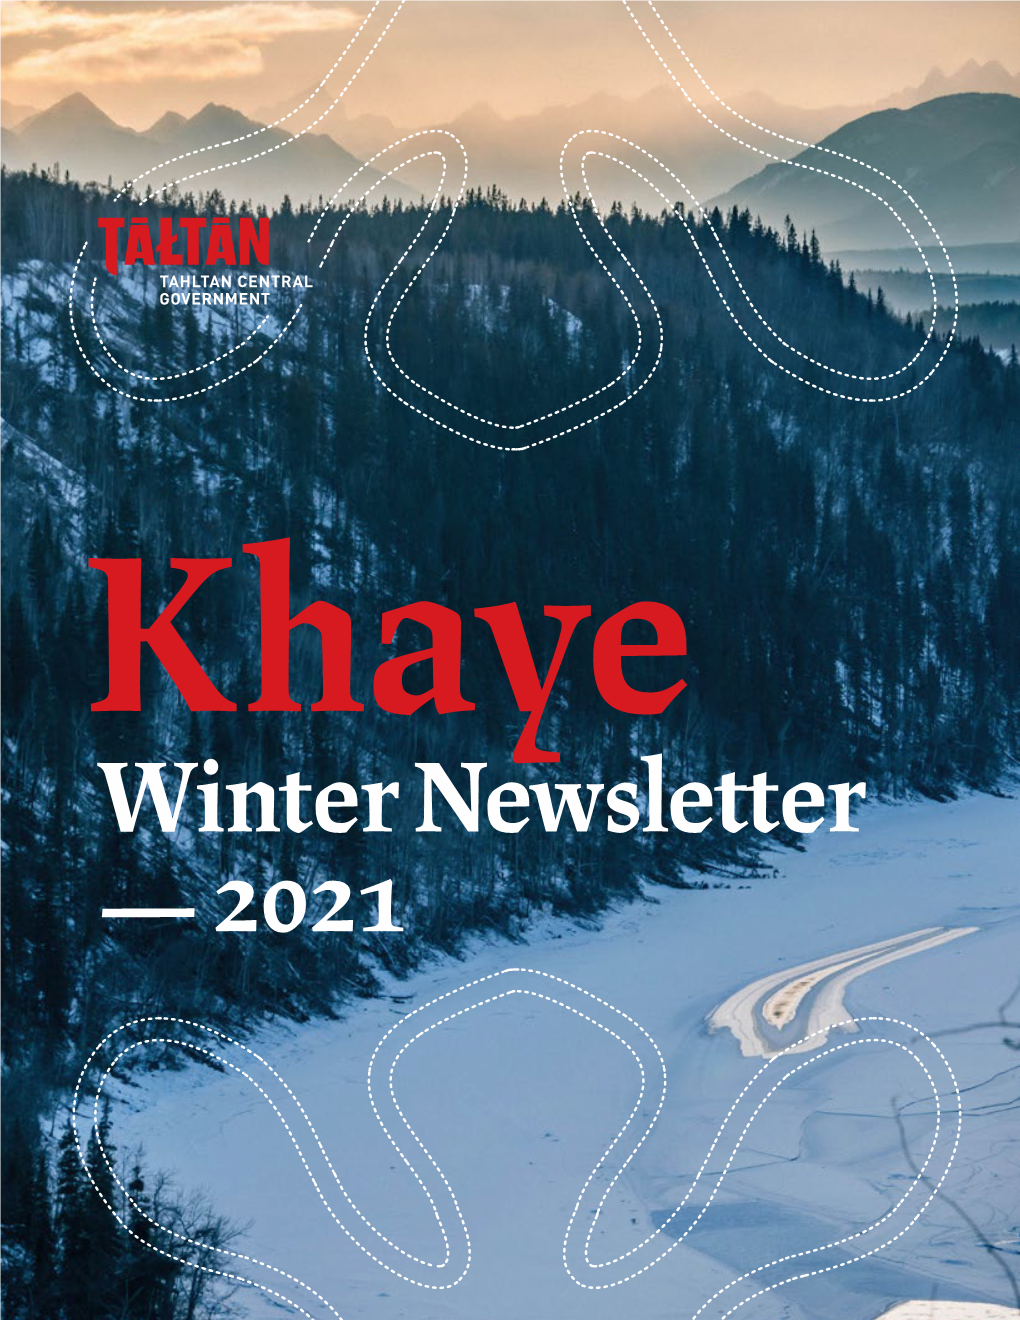 Winter Newsletter — 2021